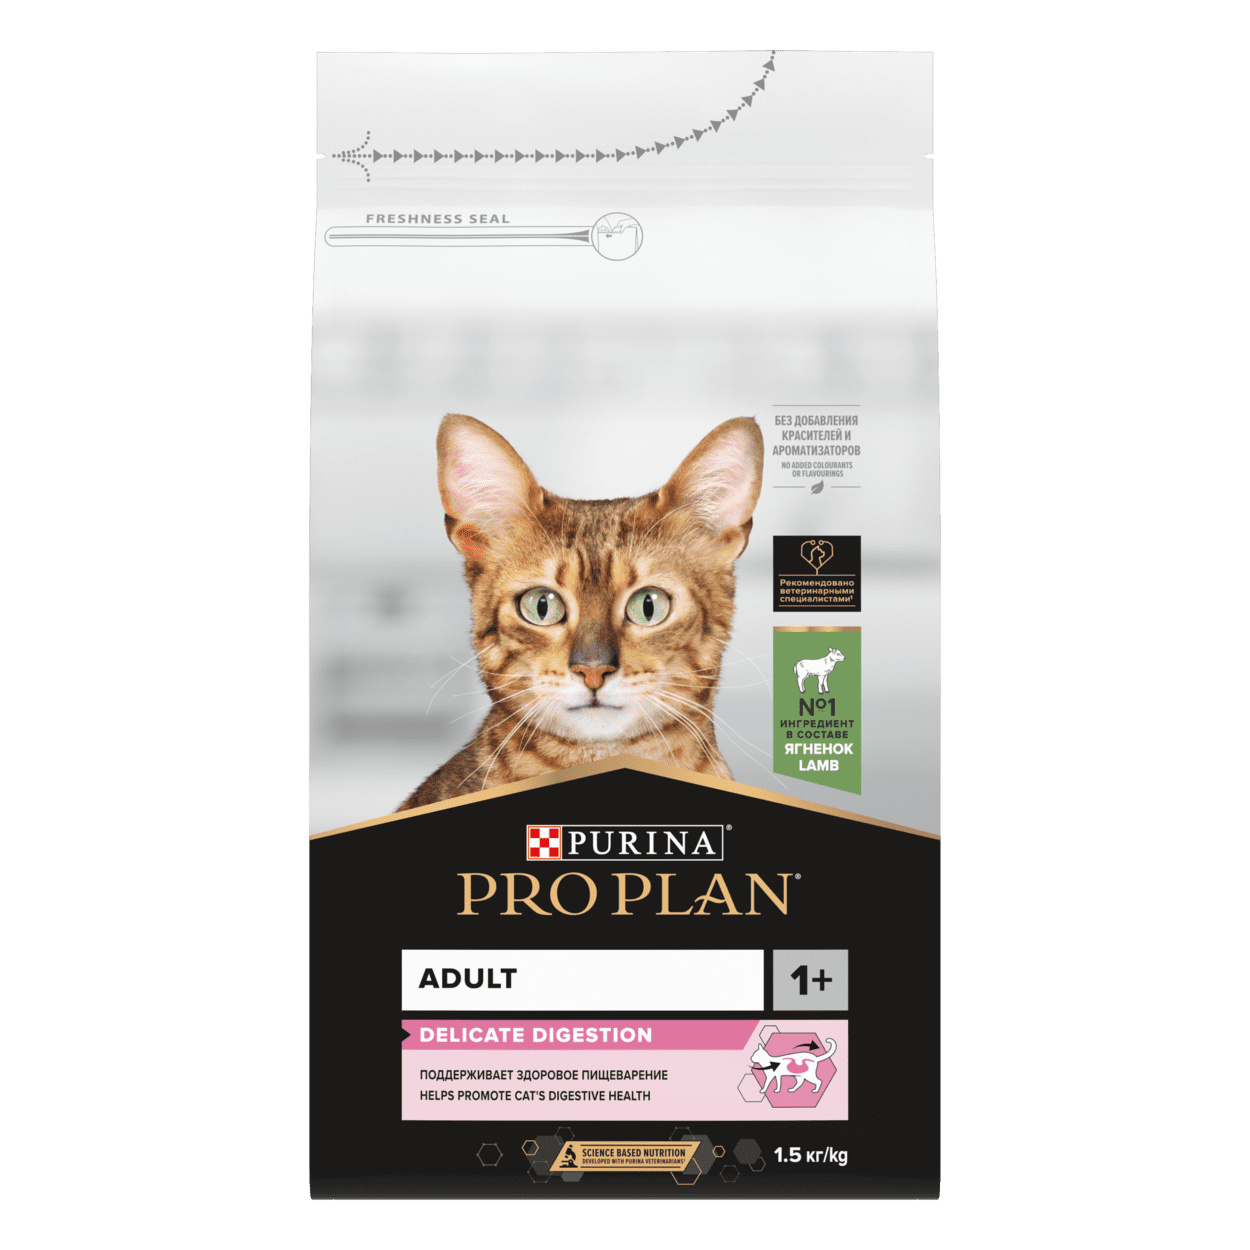 Purina Pro Plan Purina Pro Plan для взрослых кошек с чувствительным пищеварением или с особыми предпочтениями в еде, с высоким содержанием ягненка (400 г) 25364